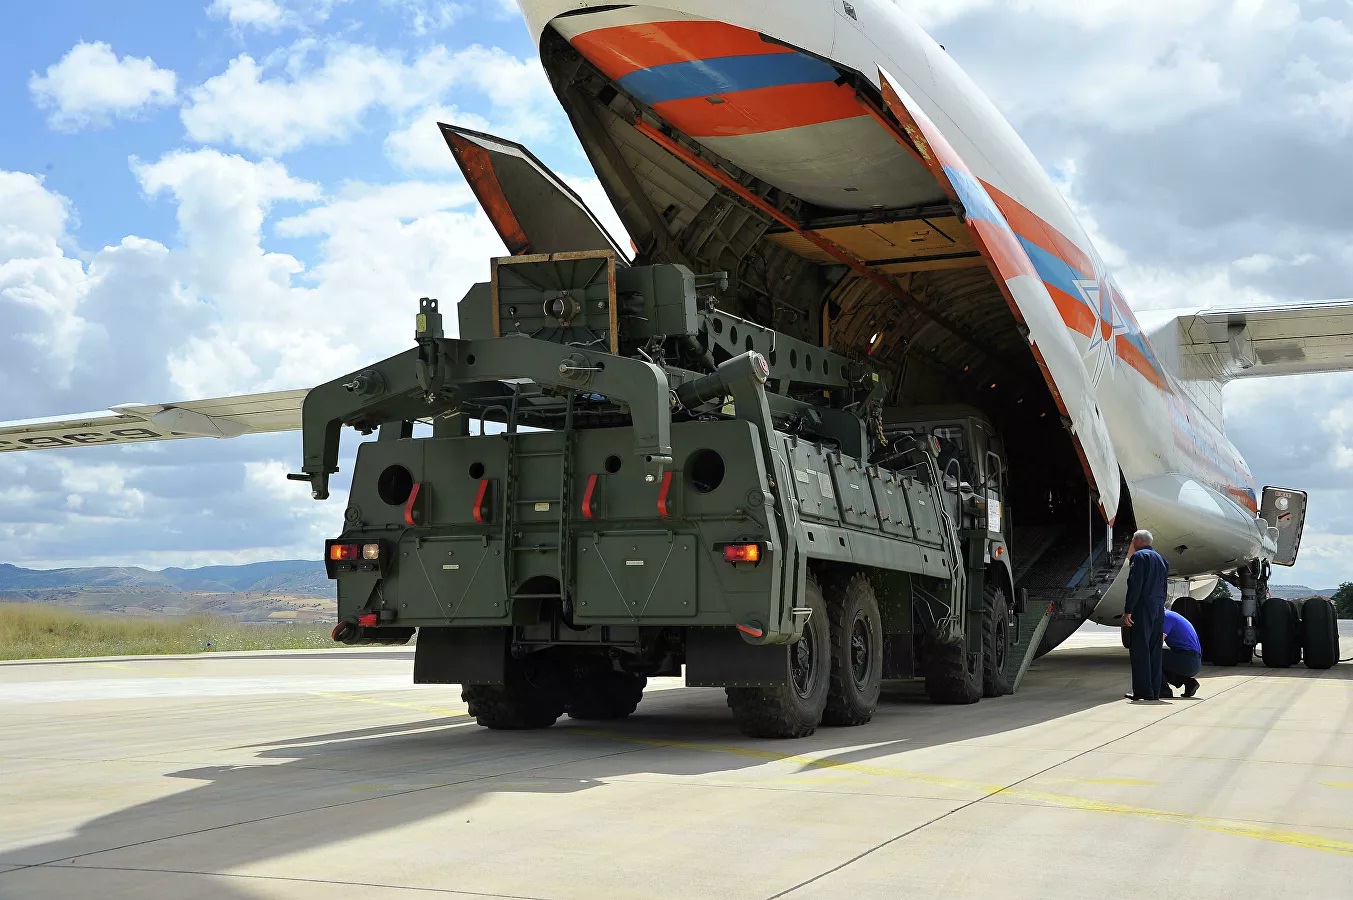 Թուրքիան «S-400»-ների հարցը լուծելու համար որևէ մոդելի կիրառության շուրջ ԱՄՆ-ի հետ քննարկում չի ունեցել